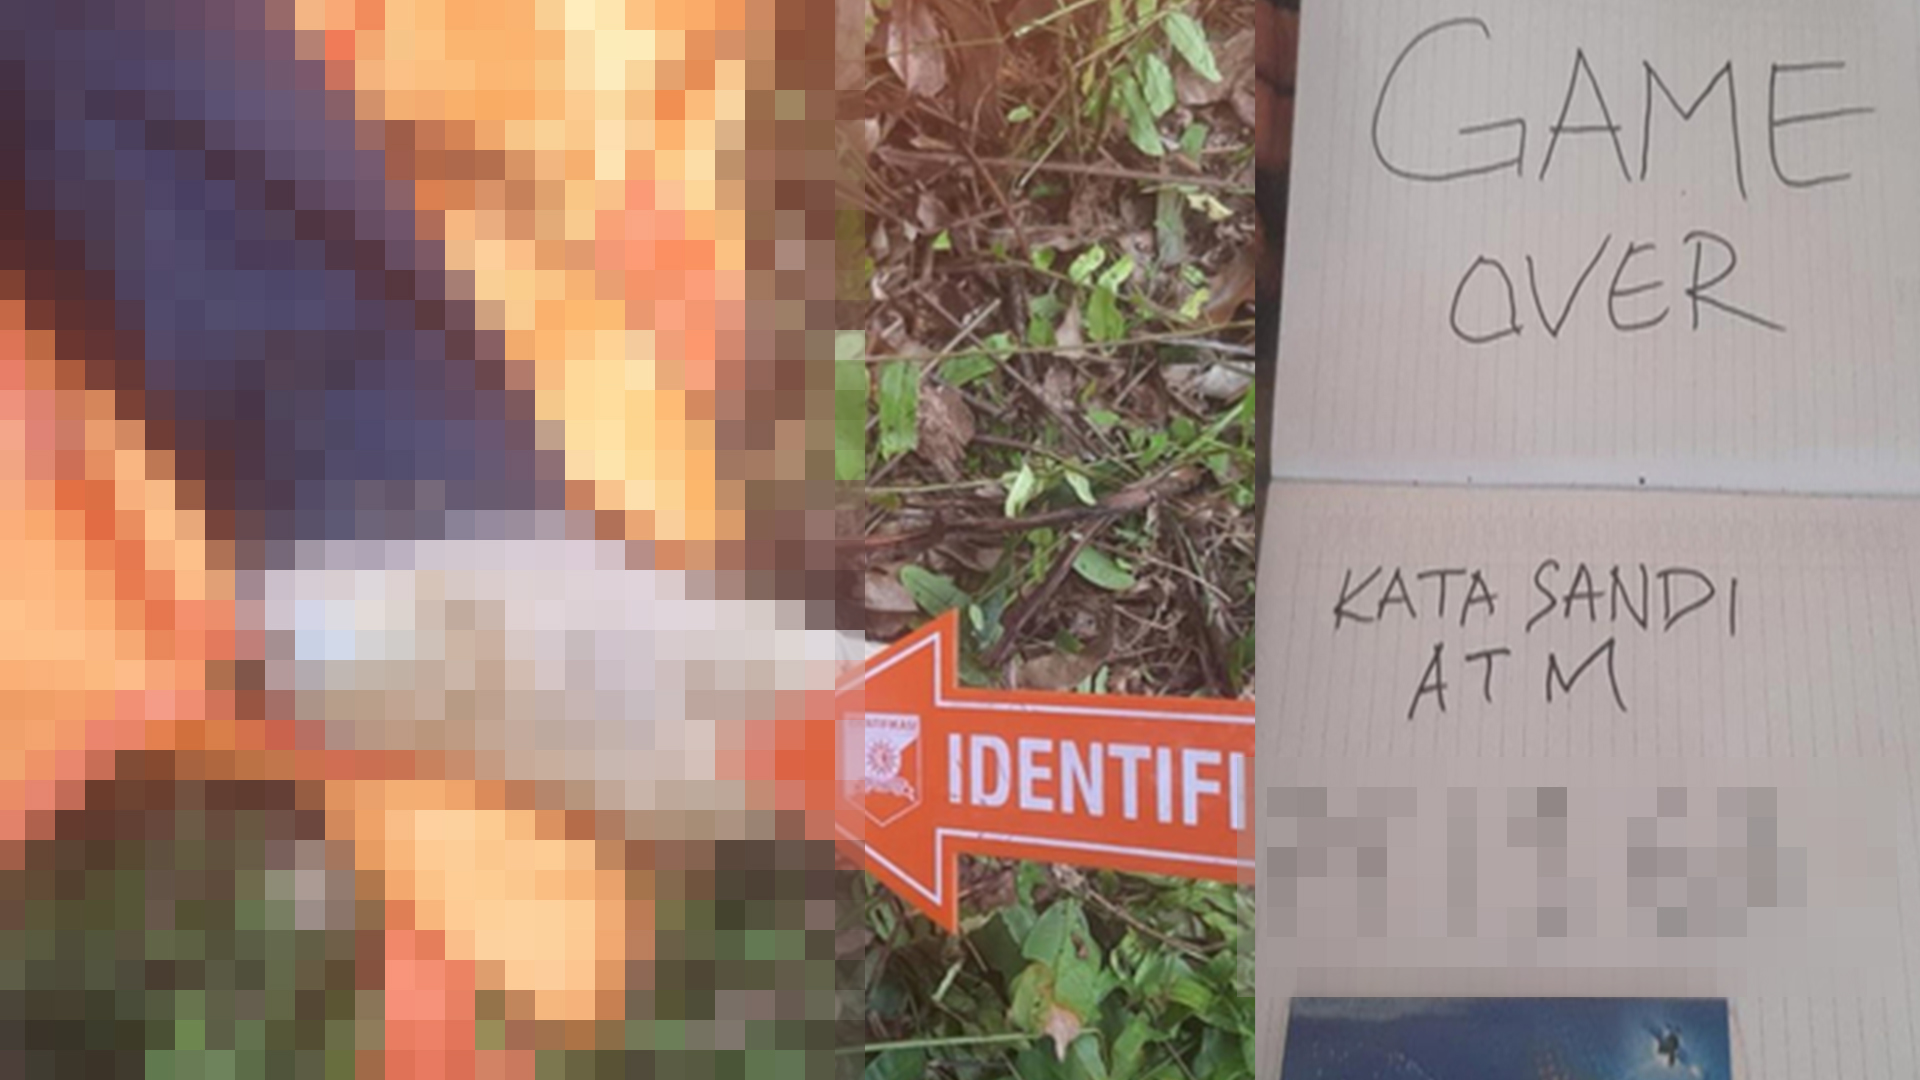 Tinggalkan Pesan 'GAMEOVER' dan Kata Sandi ATM, Pemuda Asal Pelalawan Ditemukan Tewas di Kebun Sawit